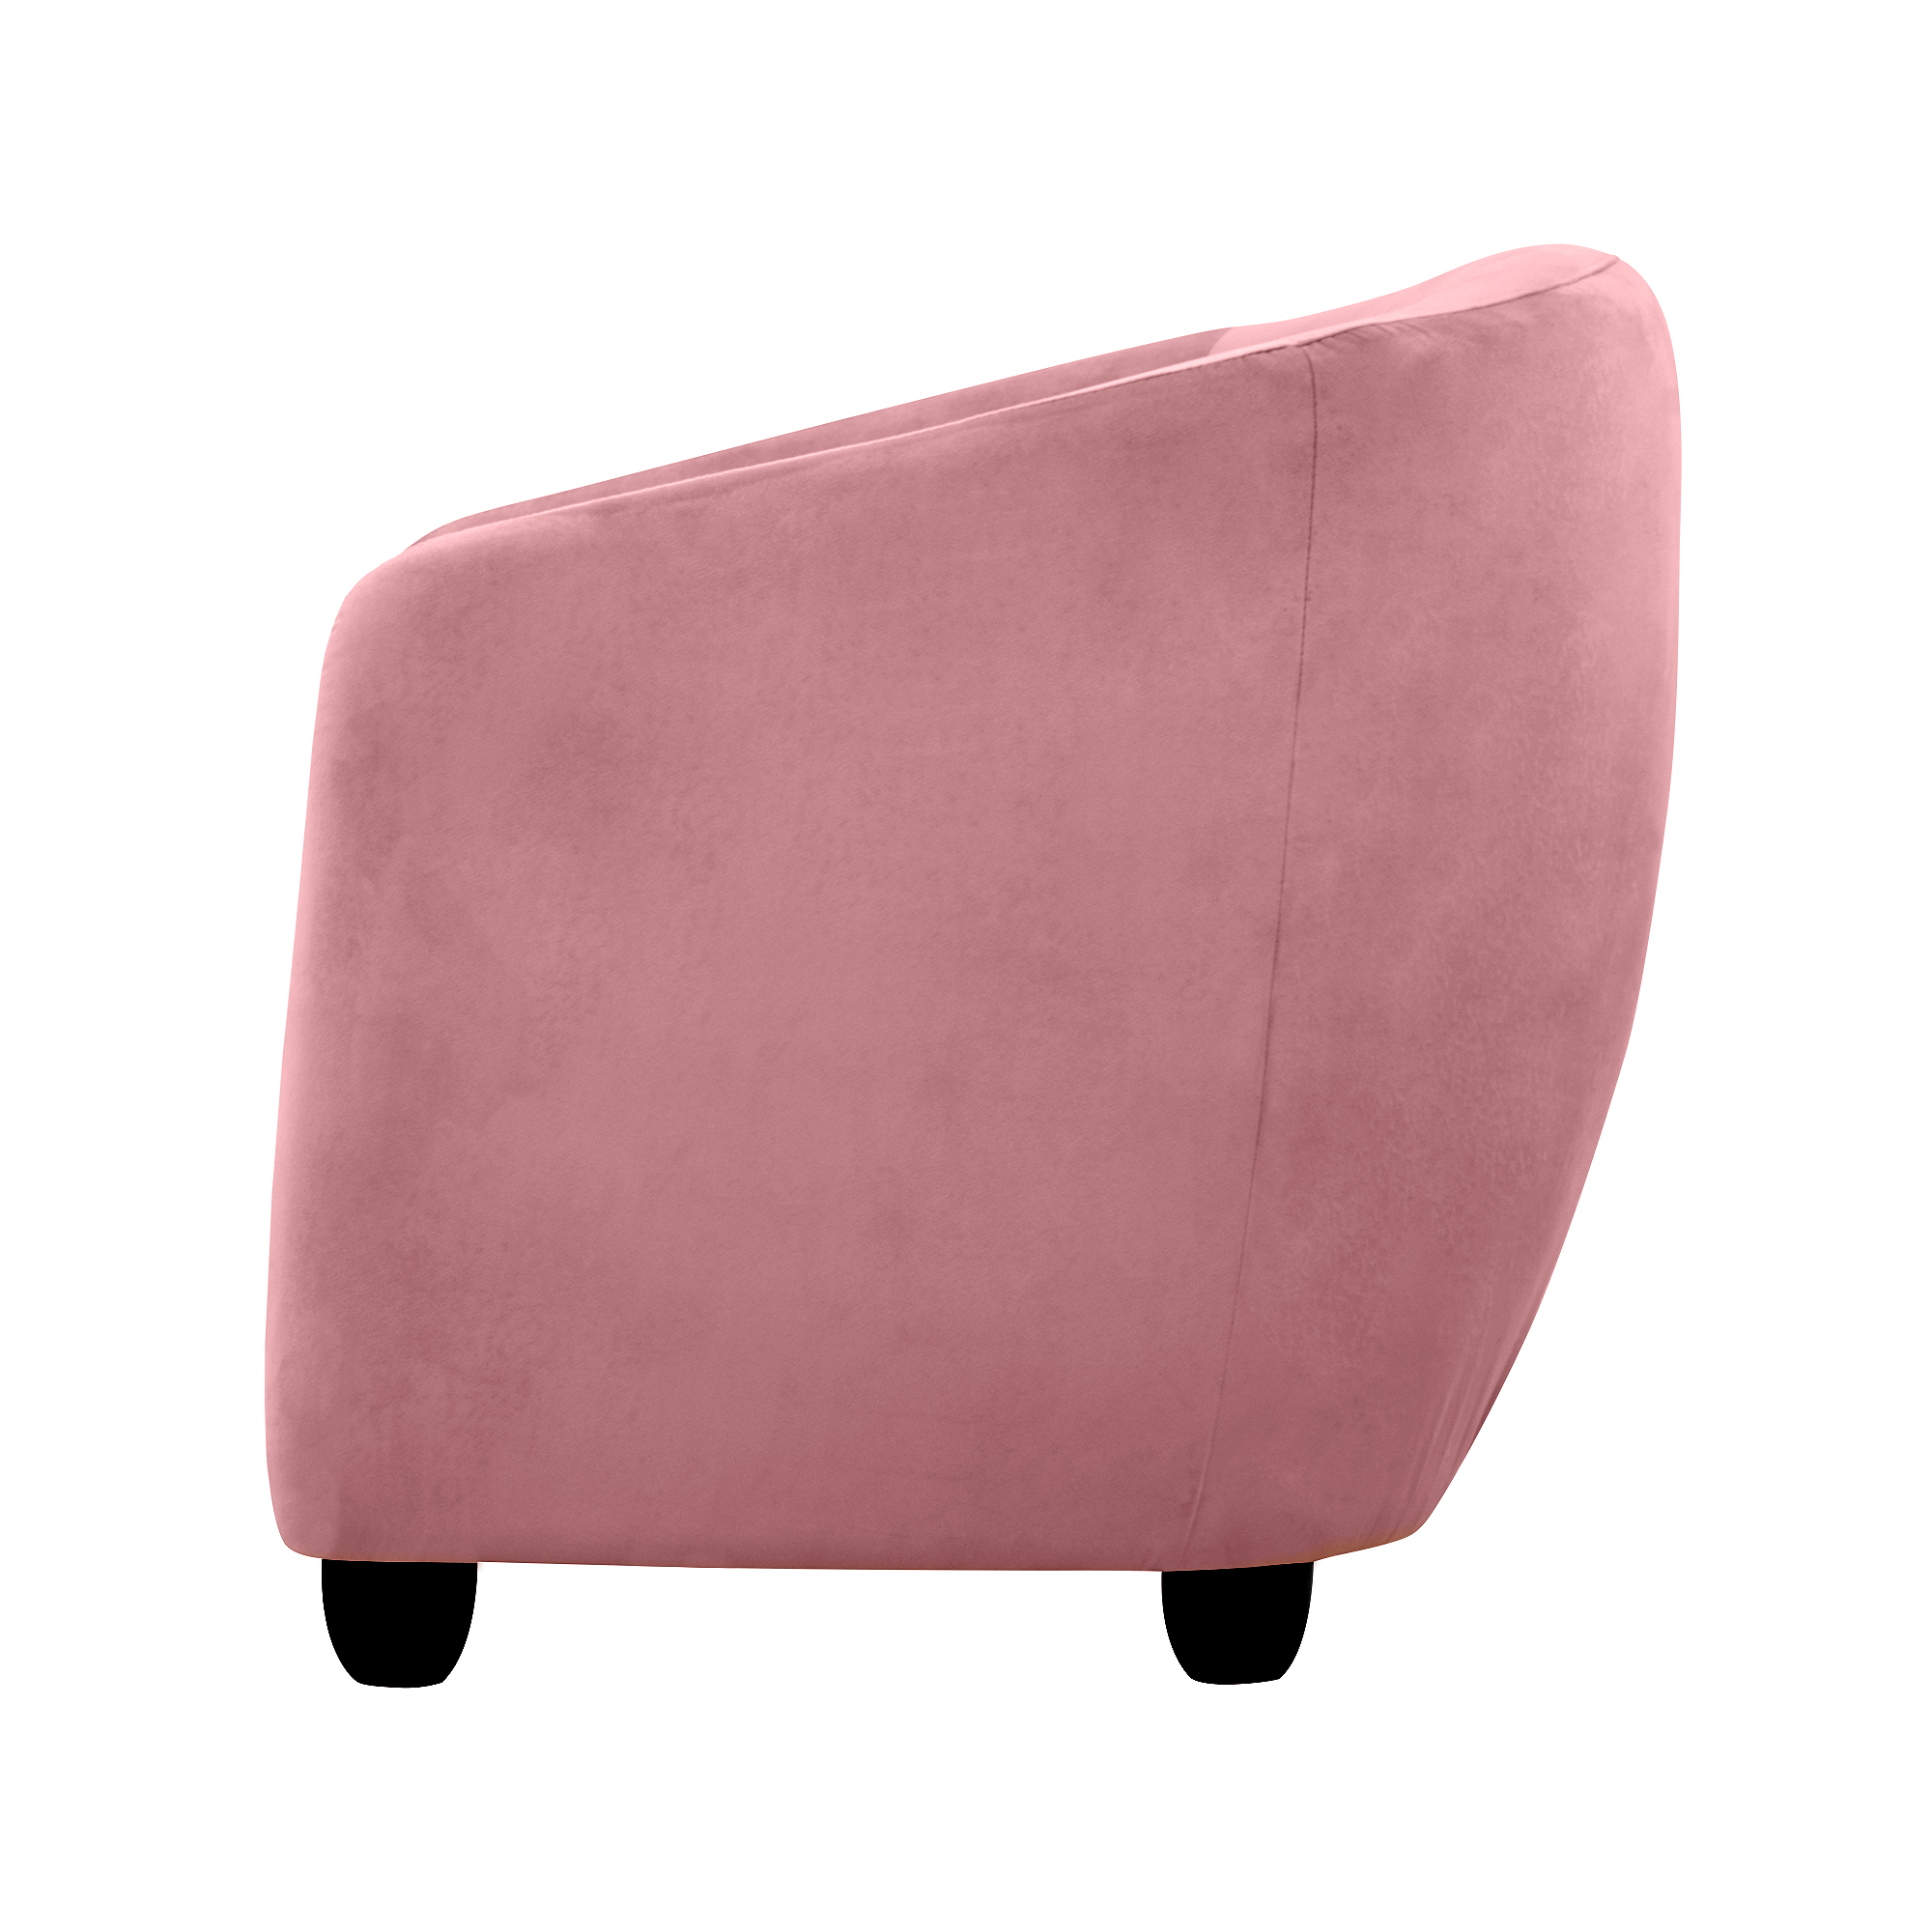 Кресло Liyasi Оливия розовое 72x67x66cm - фото 3